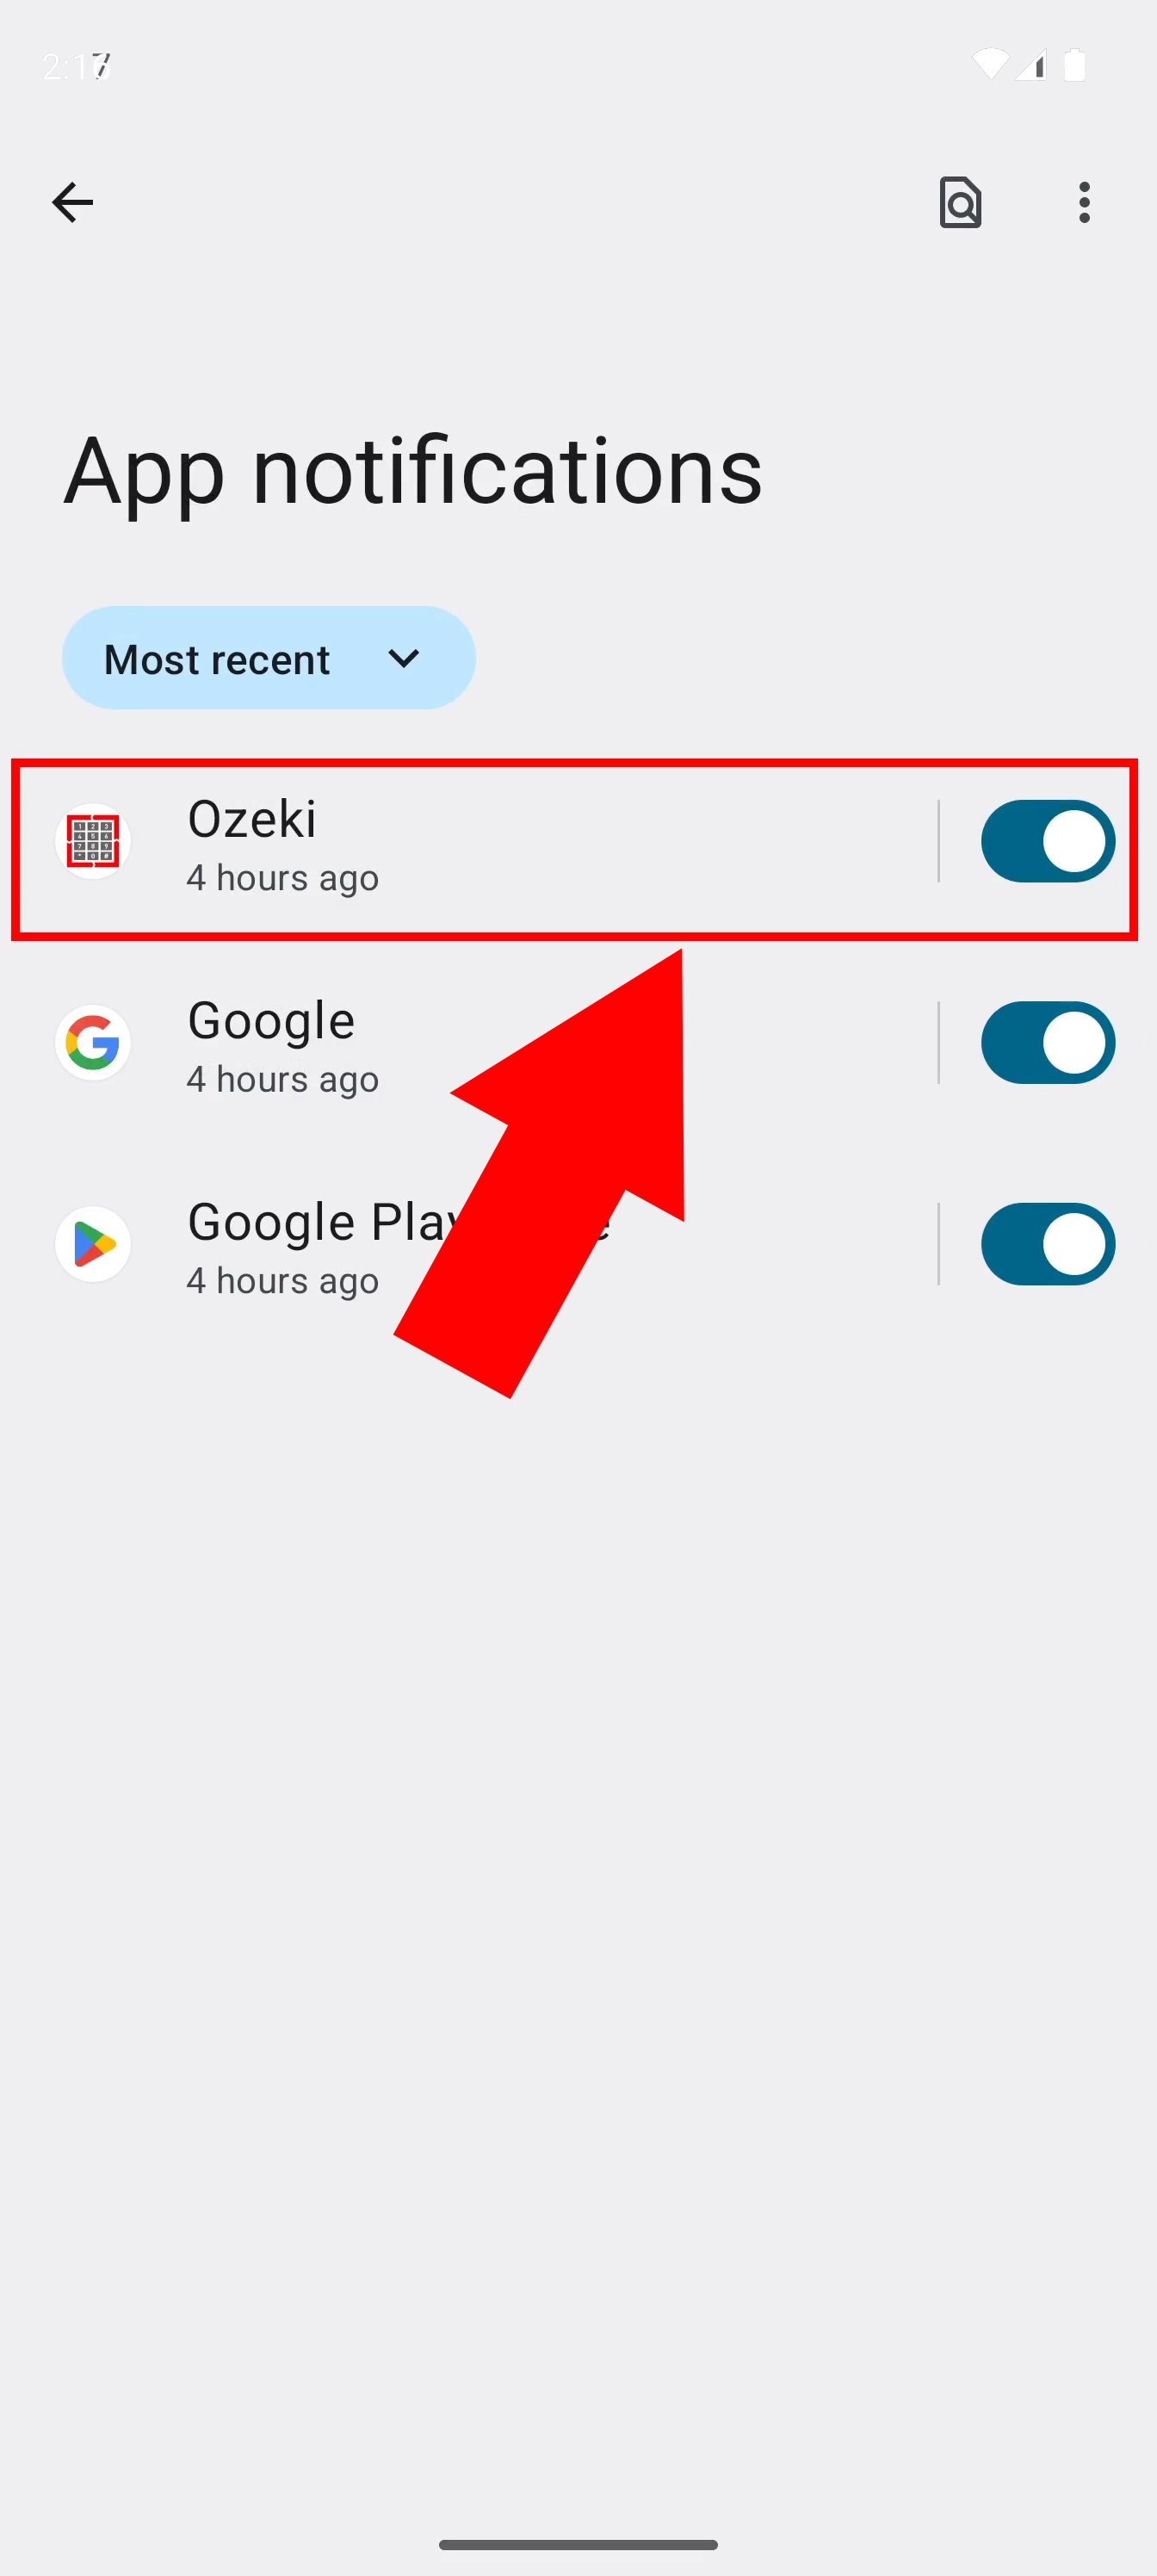 Enable notifications for Ozeki